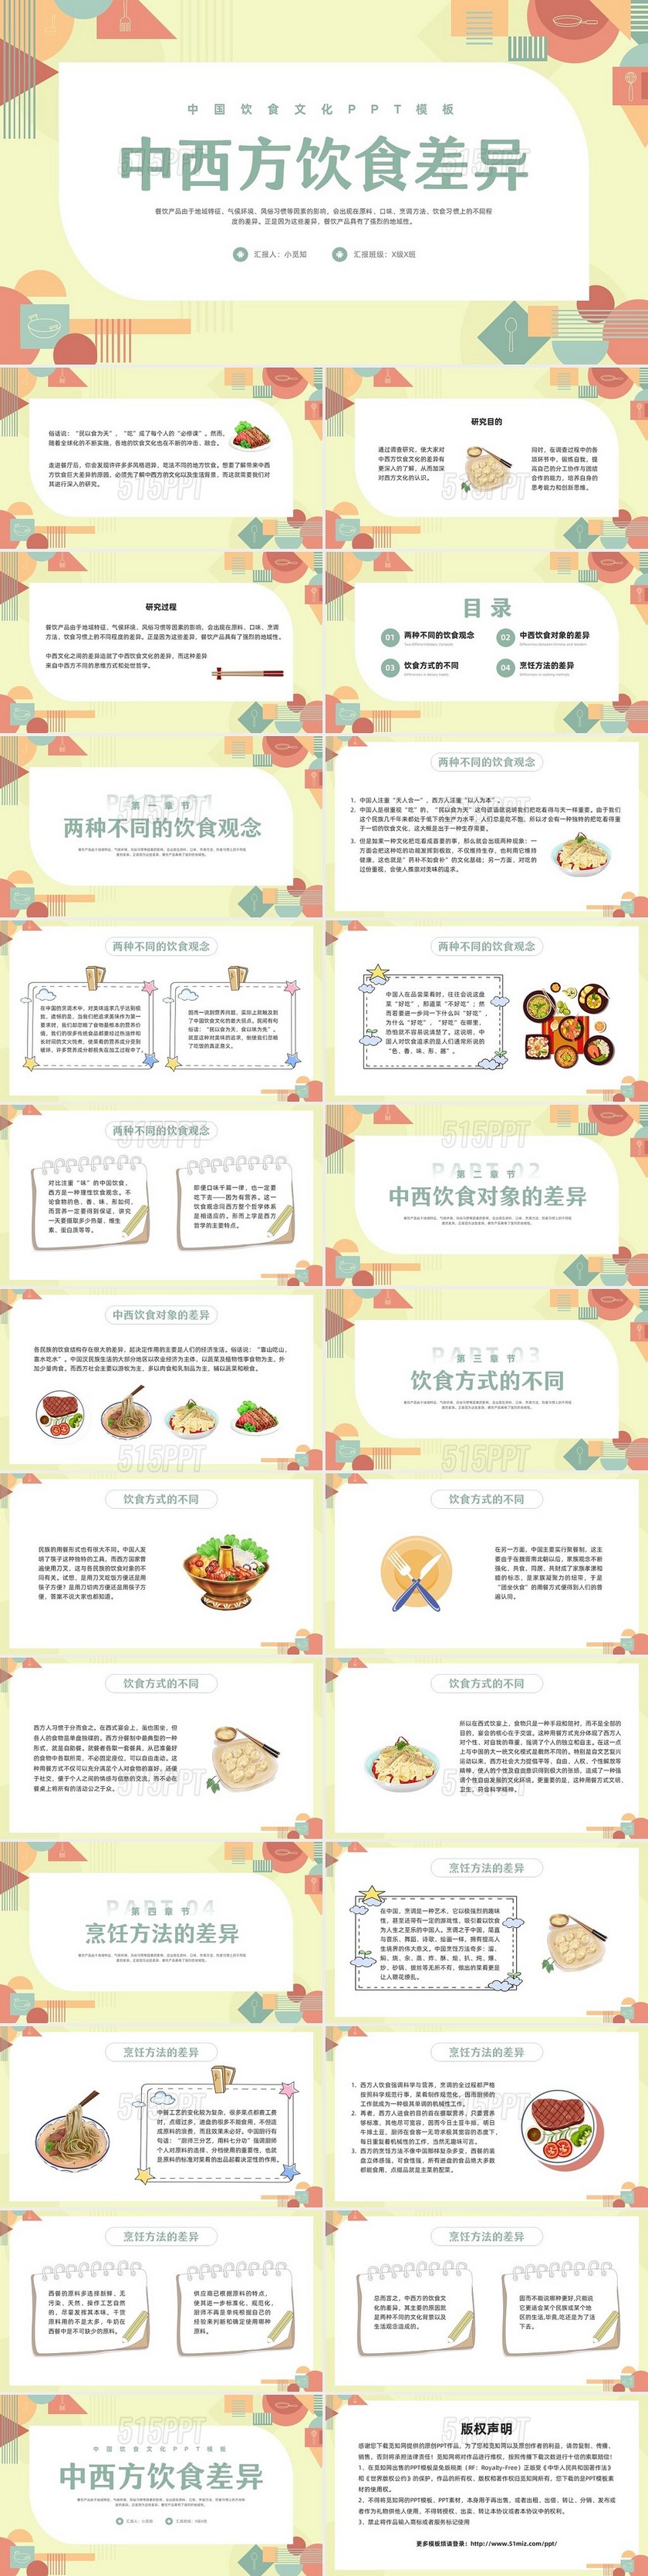 浅色孟菲斯中西方饮食差异PPT模板宣传PPT动态PPT中国中国传统文化